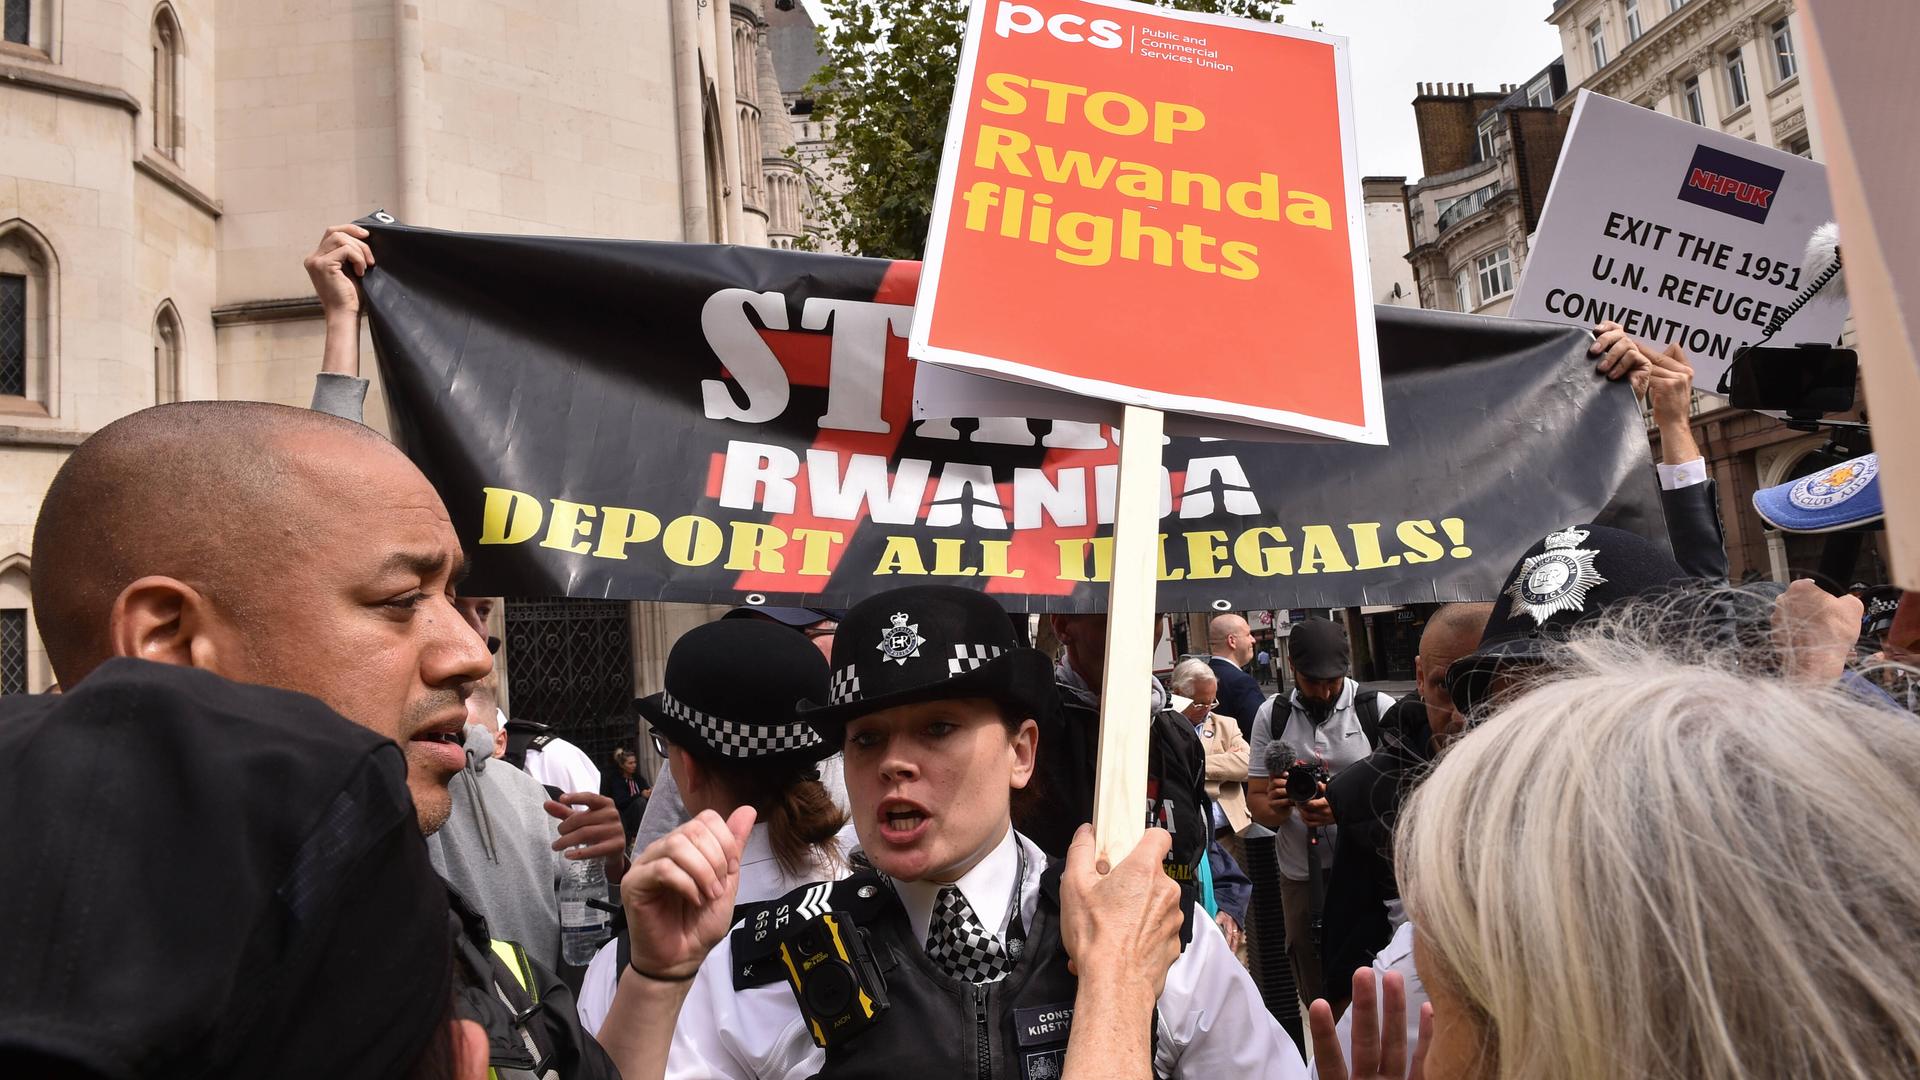 Eine aufgebrachte Menschenmenge protestiert in London gegen das Ausfliegen von Geflüchteten nach Ruanda. Die Polizei greift ein. 